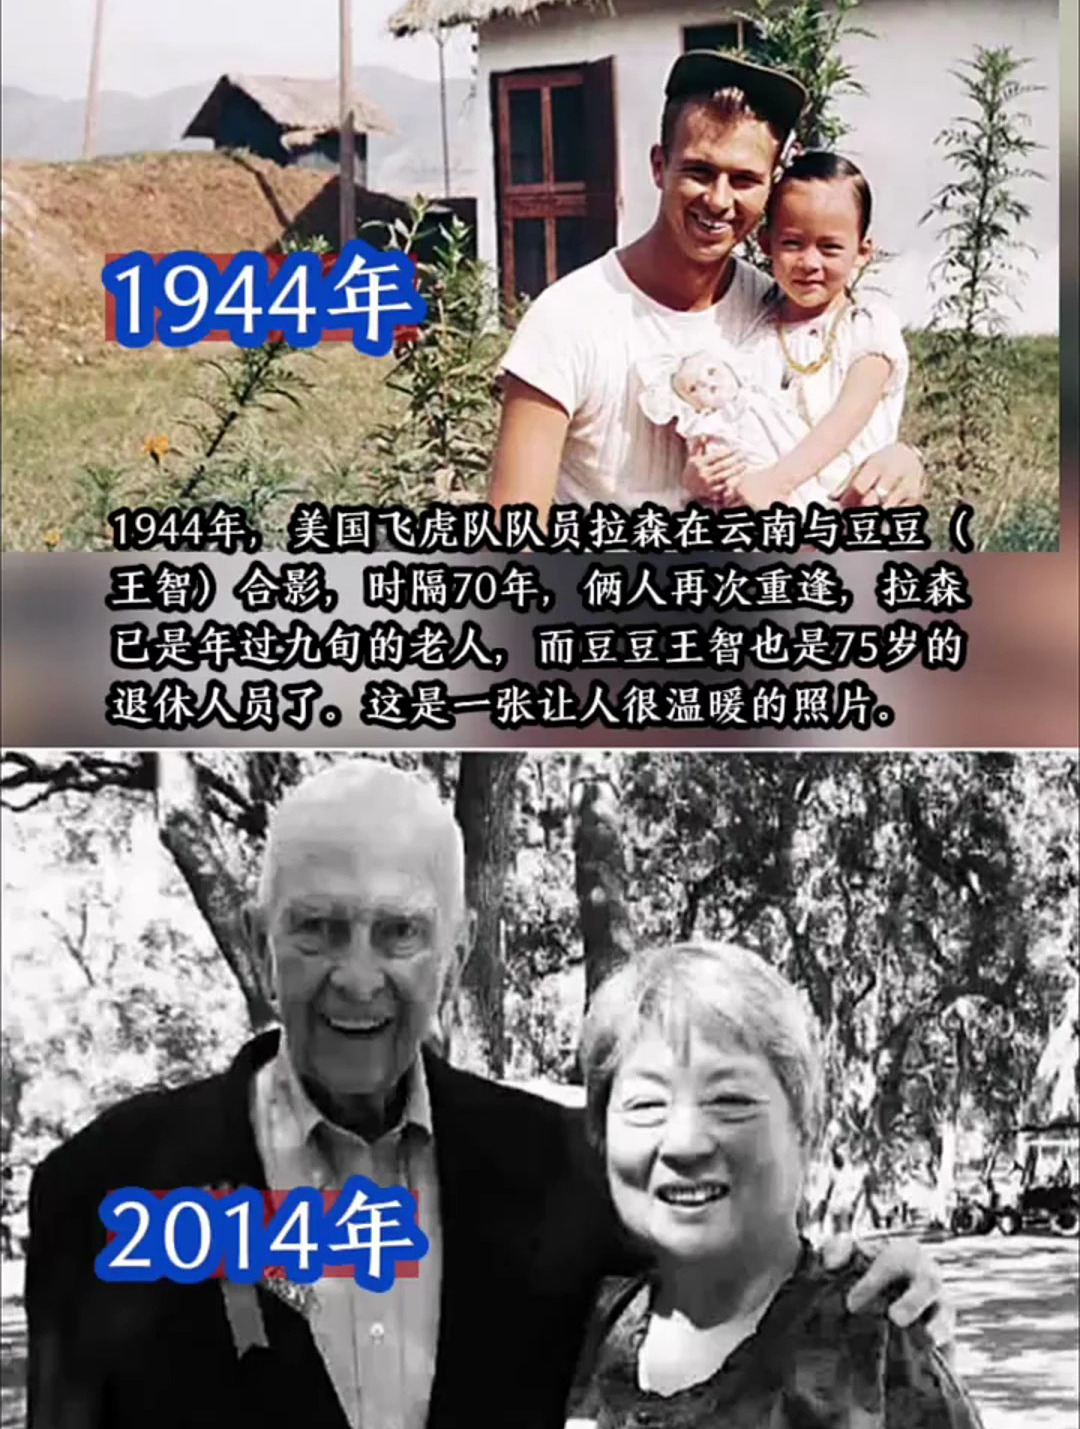 1944年飞虎队队员拉森在云南与豆豆合影时隔70年俩人再次重逢